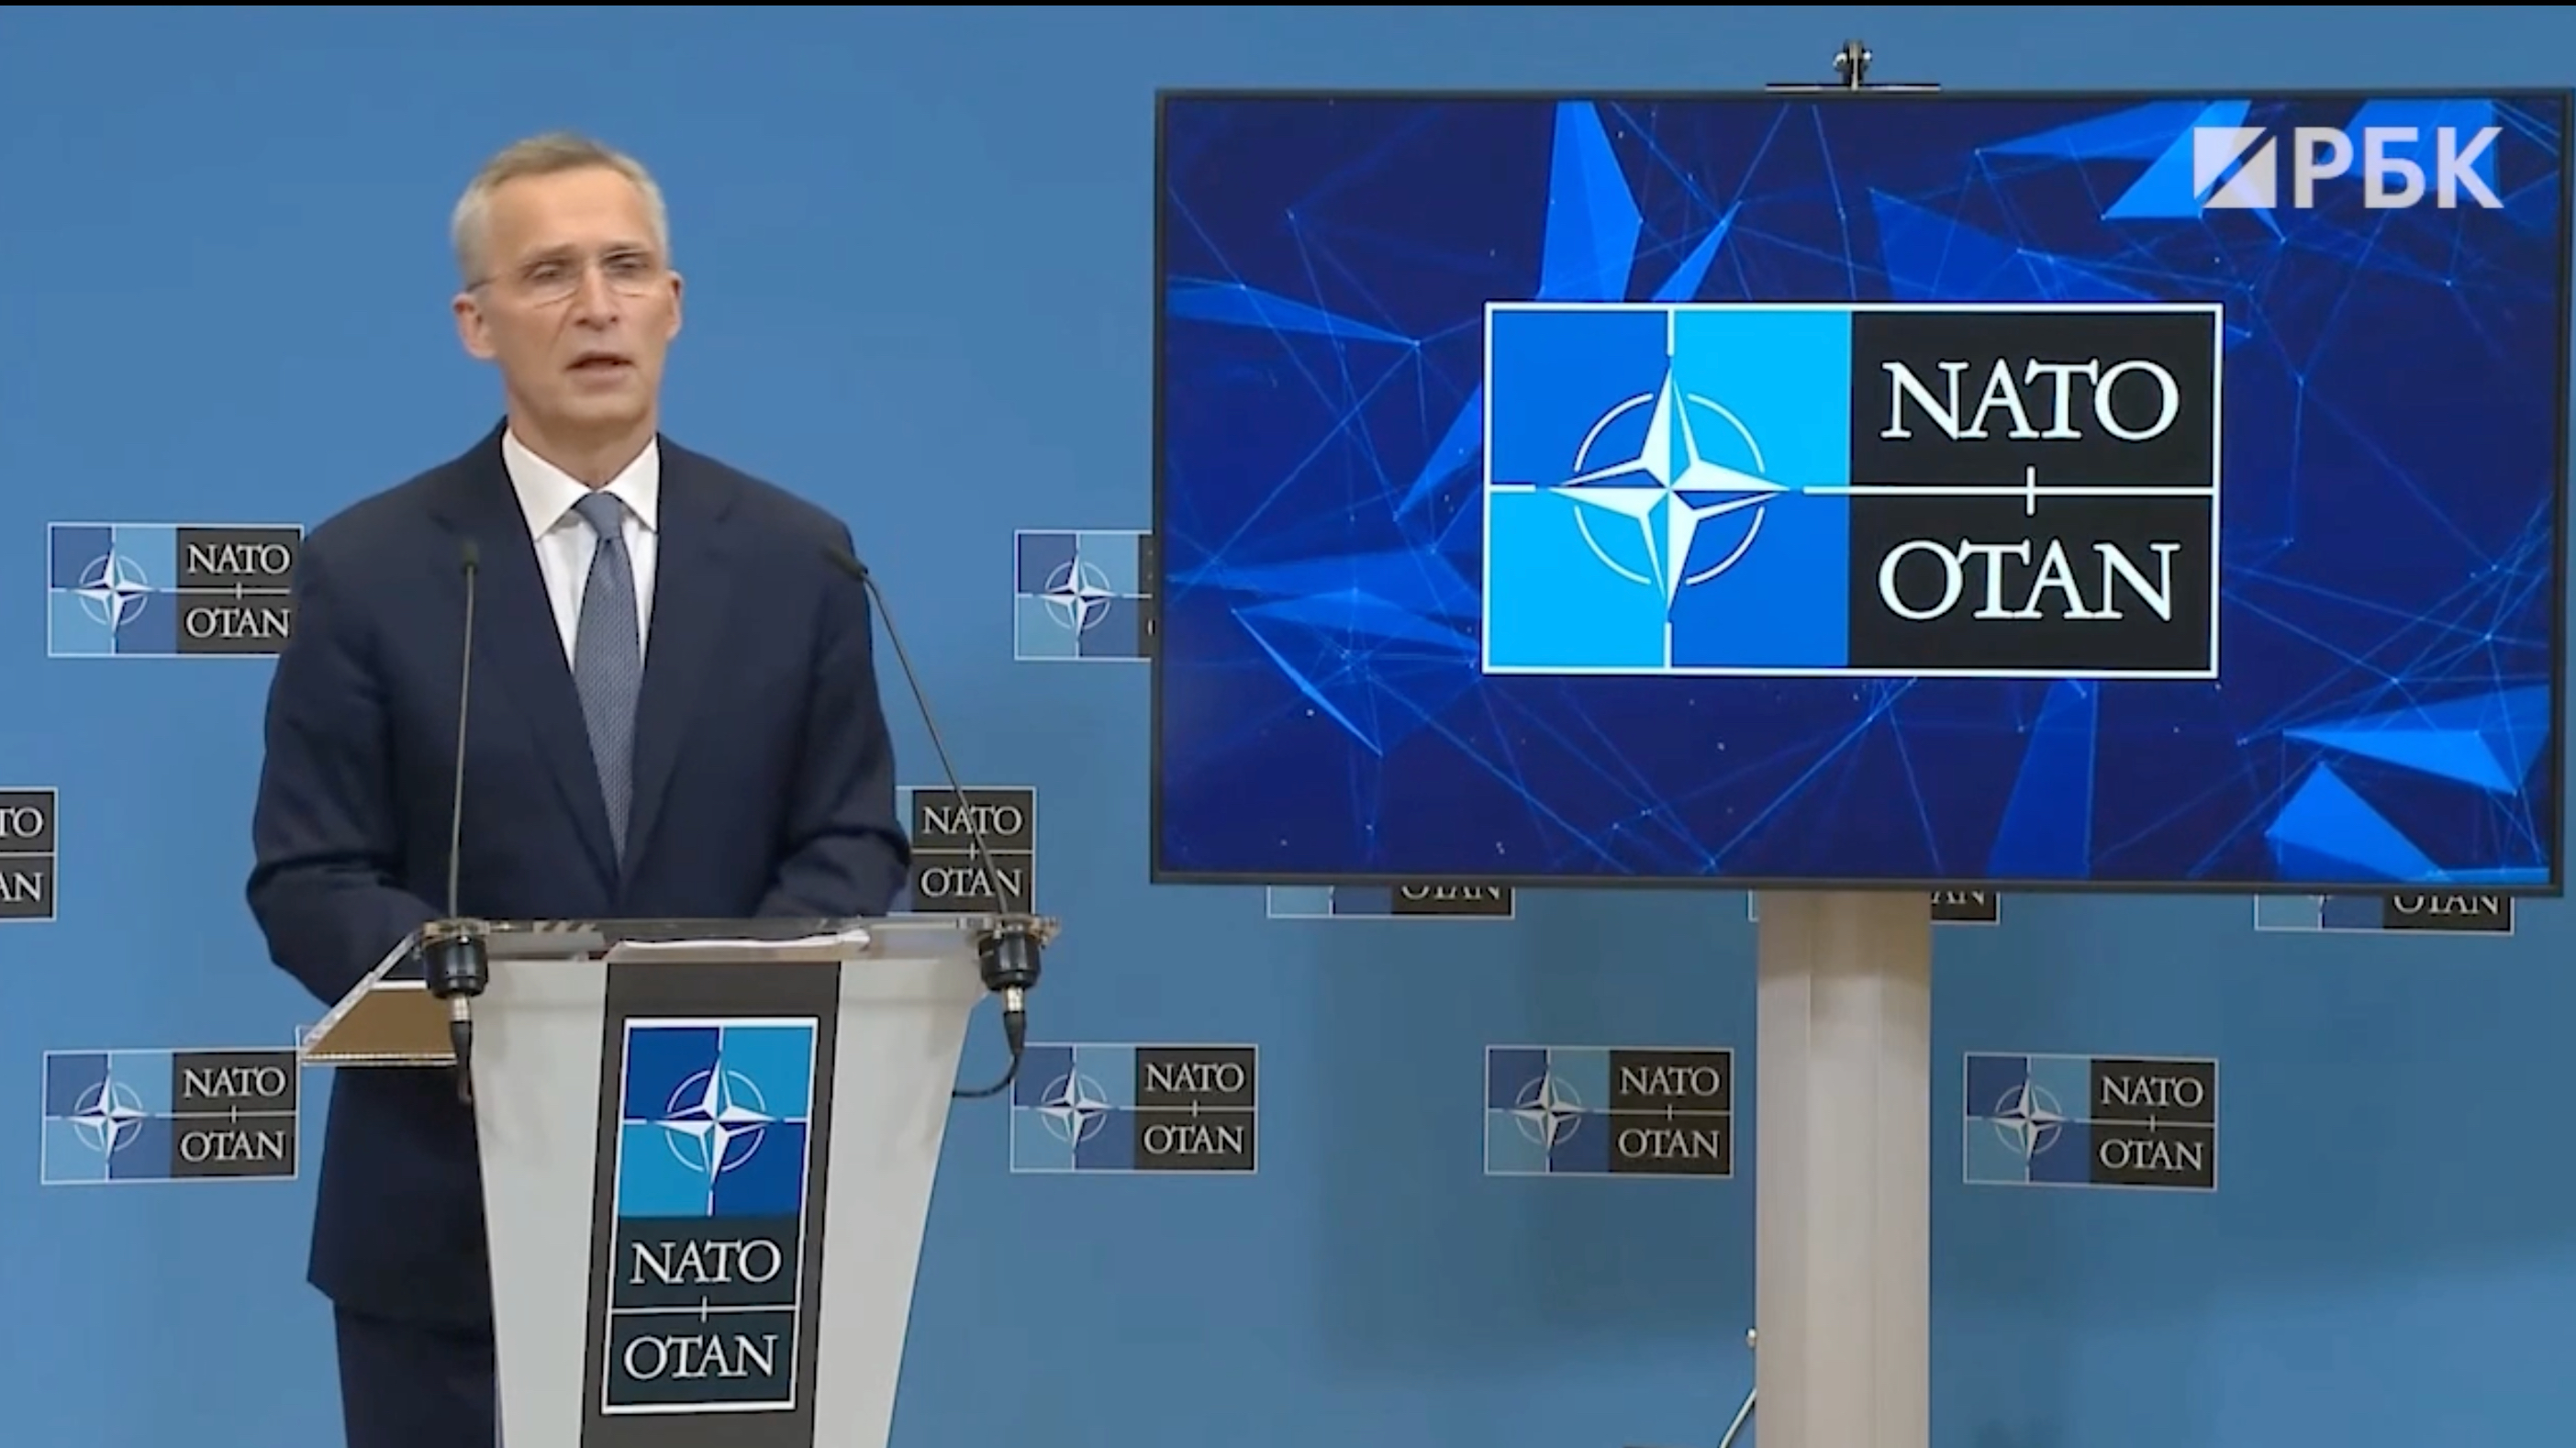 Прибалтика начала переговоры об увеличении контингента НАТО"/>













